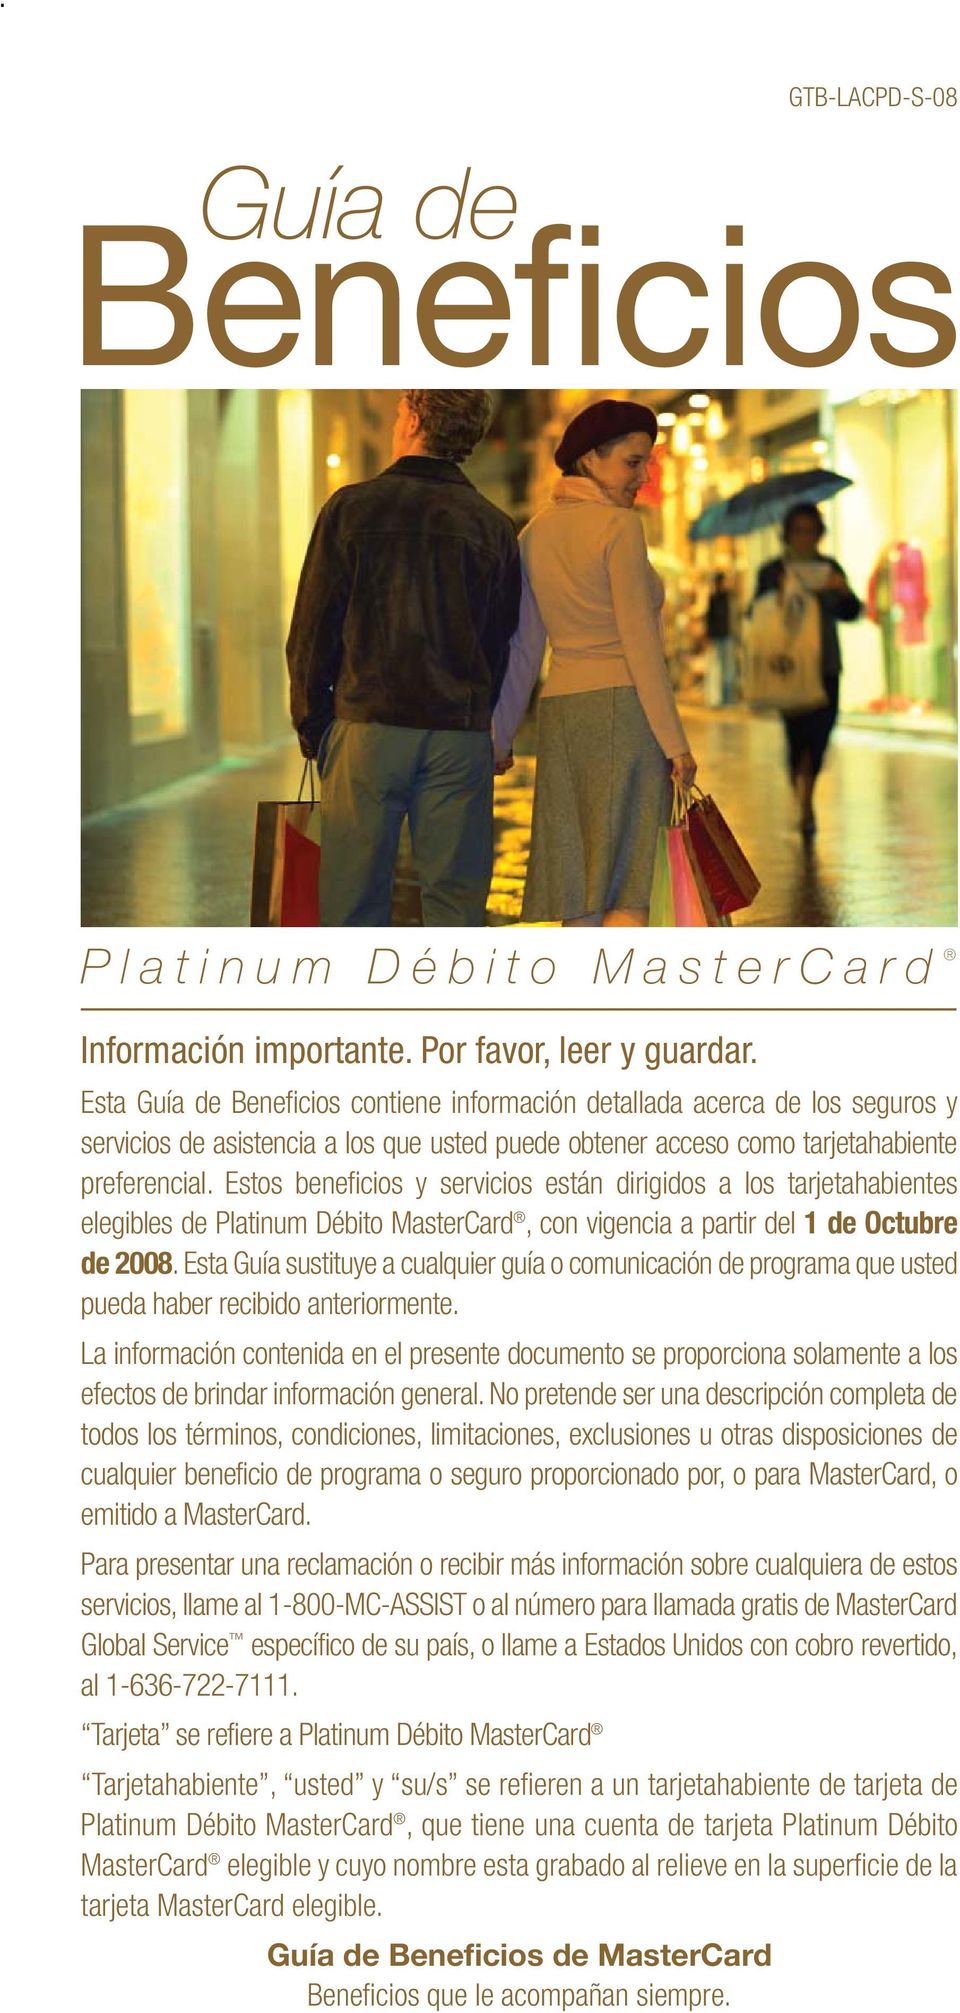 Estos beneficios y servicios están dirigidos a los tarjetahabientes elegibles de Platinum Débito MasterCard,con vigencia a partir del 1 de Octubre de 2008.